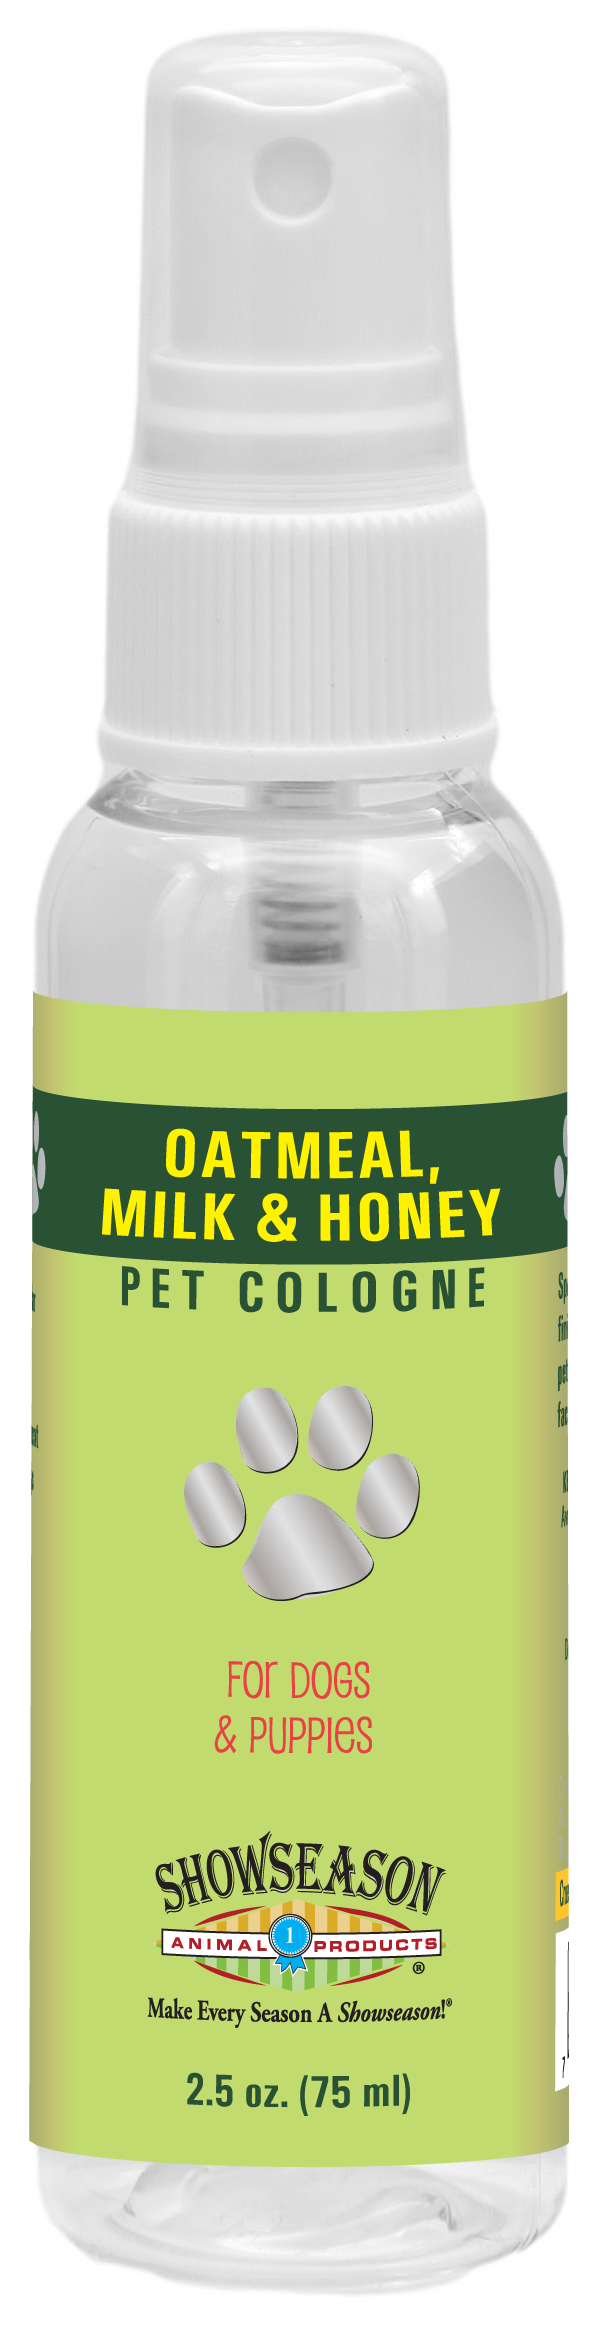 Oatmeal, Milk & Honey Pet Cologne